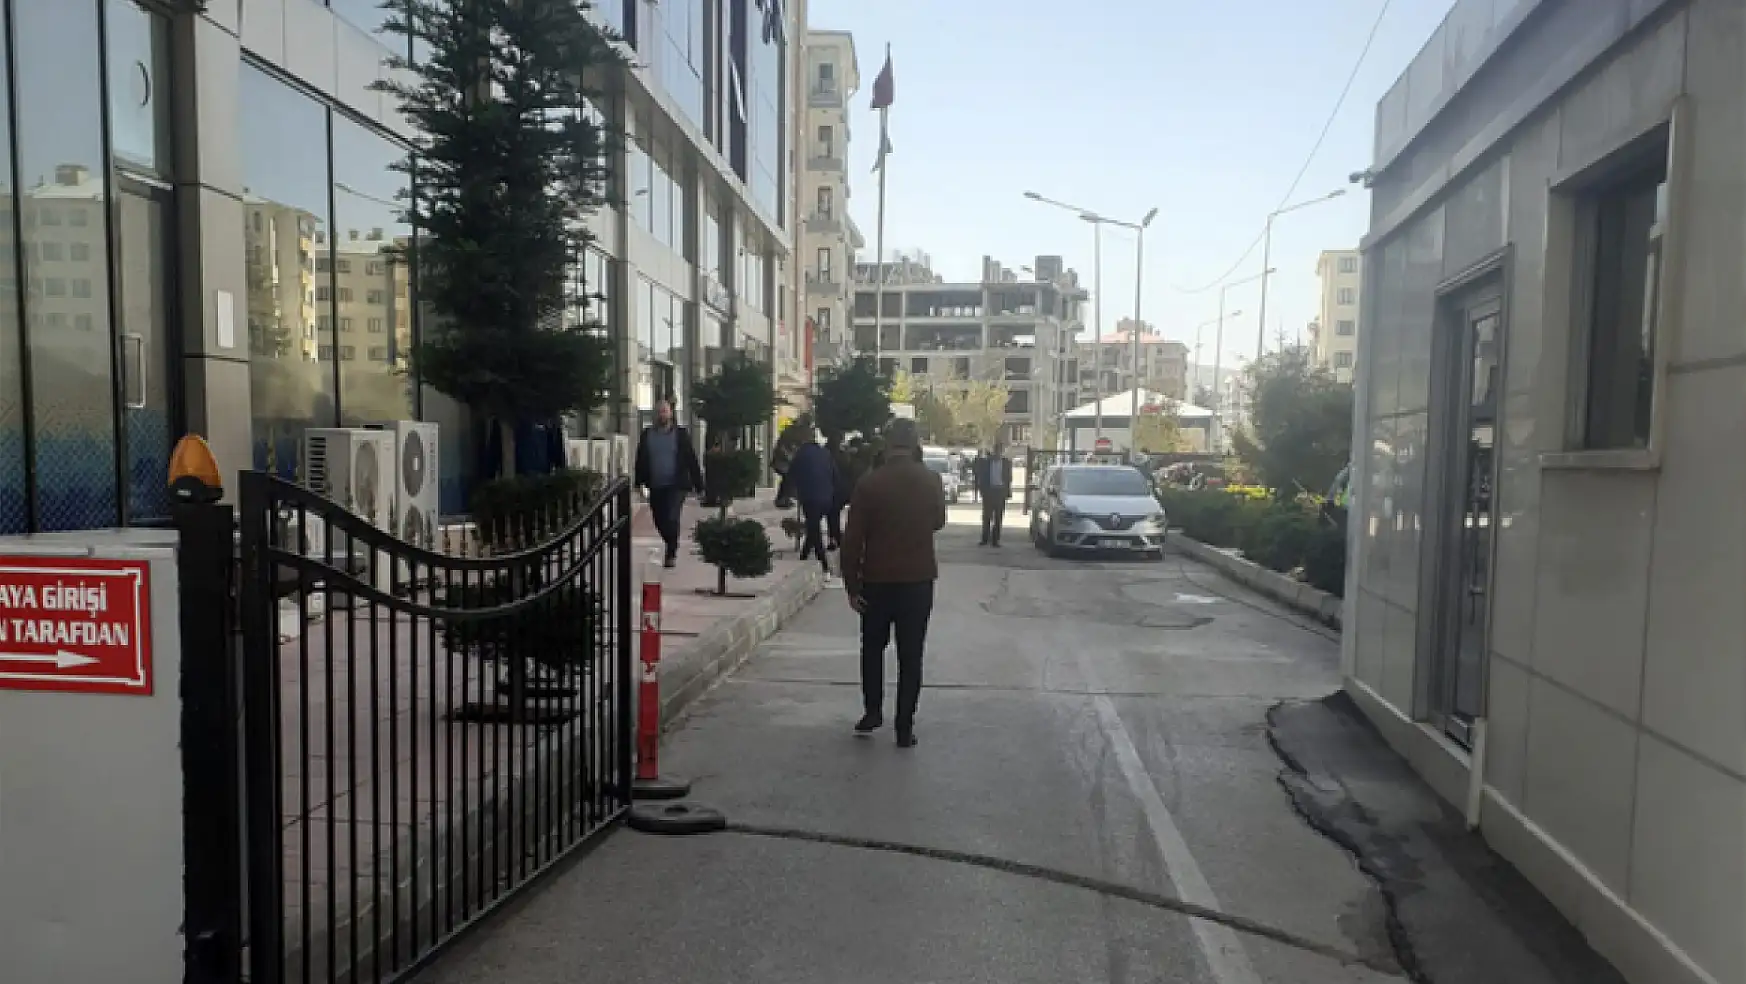 İpekyolu Belediyesi'nde giriş kapısı kullanıma açıldı ve arama noktası kaldırıldı